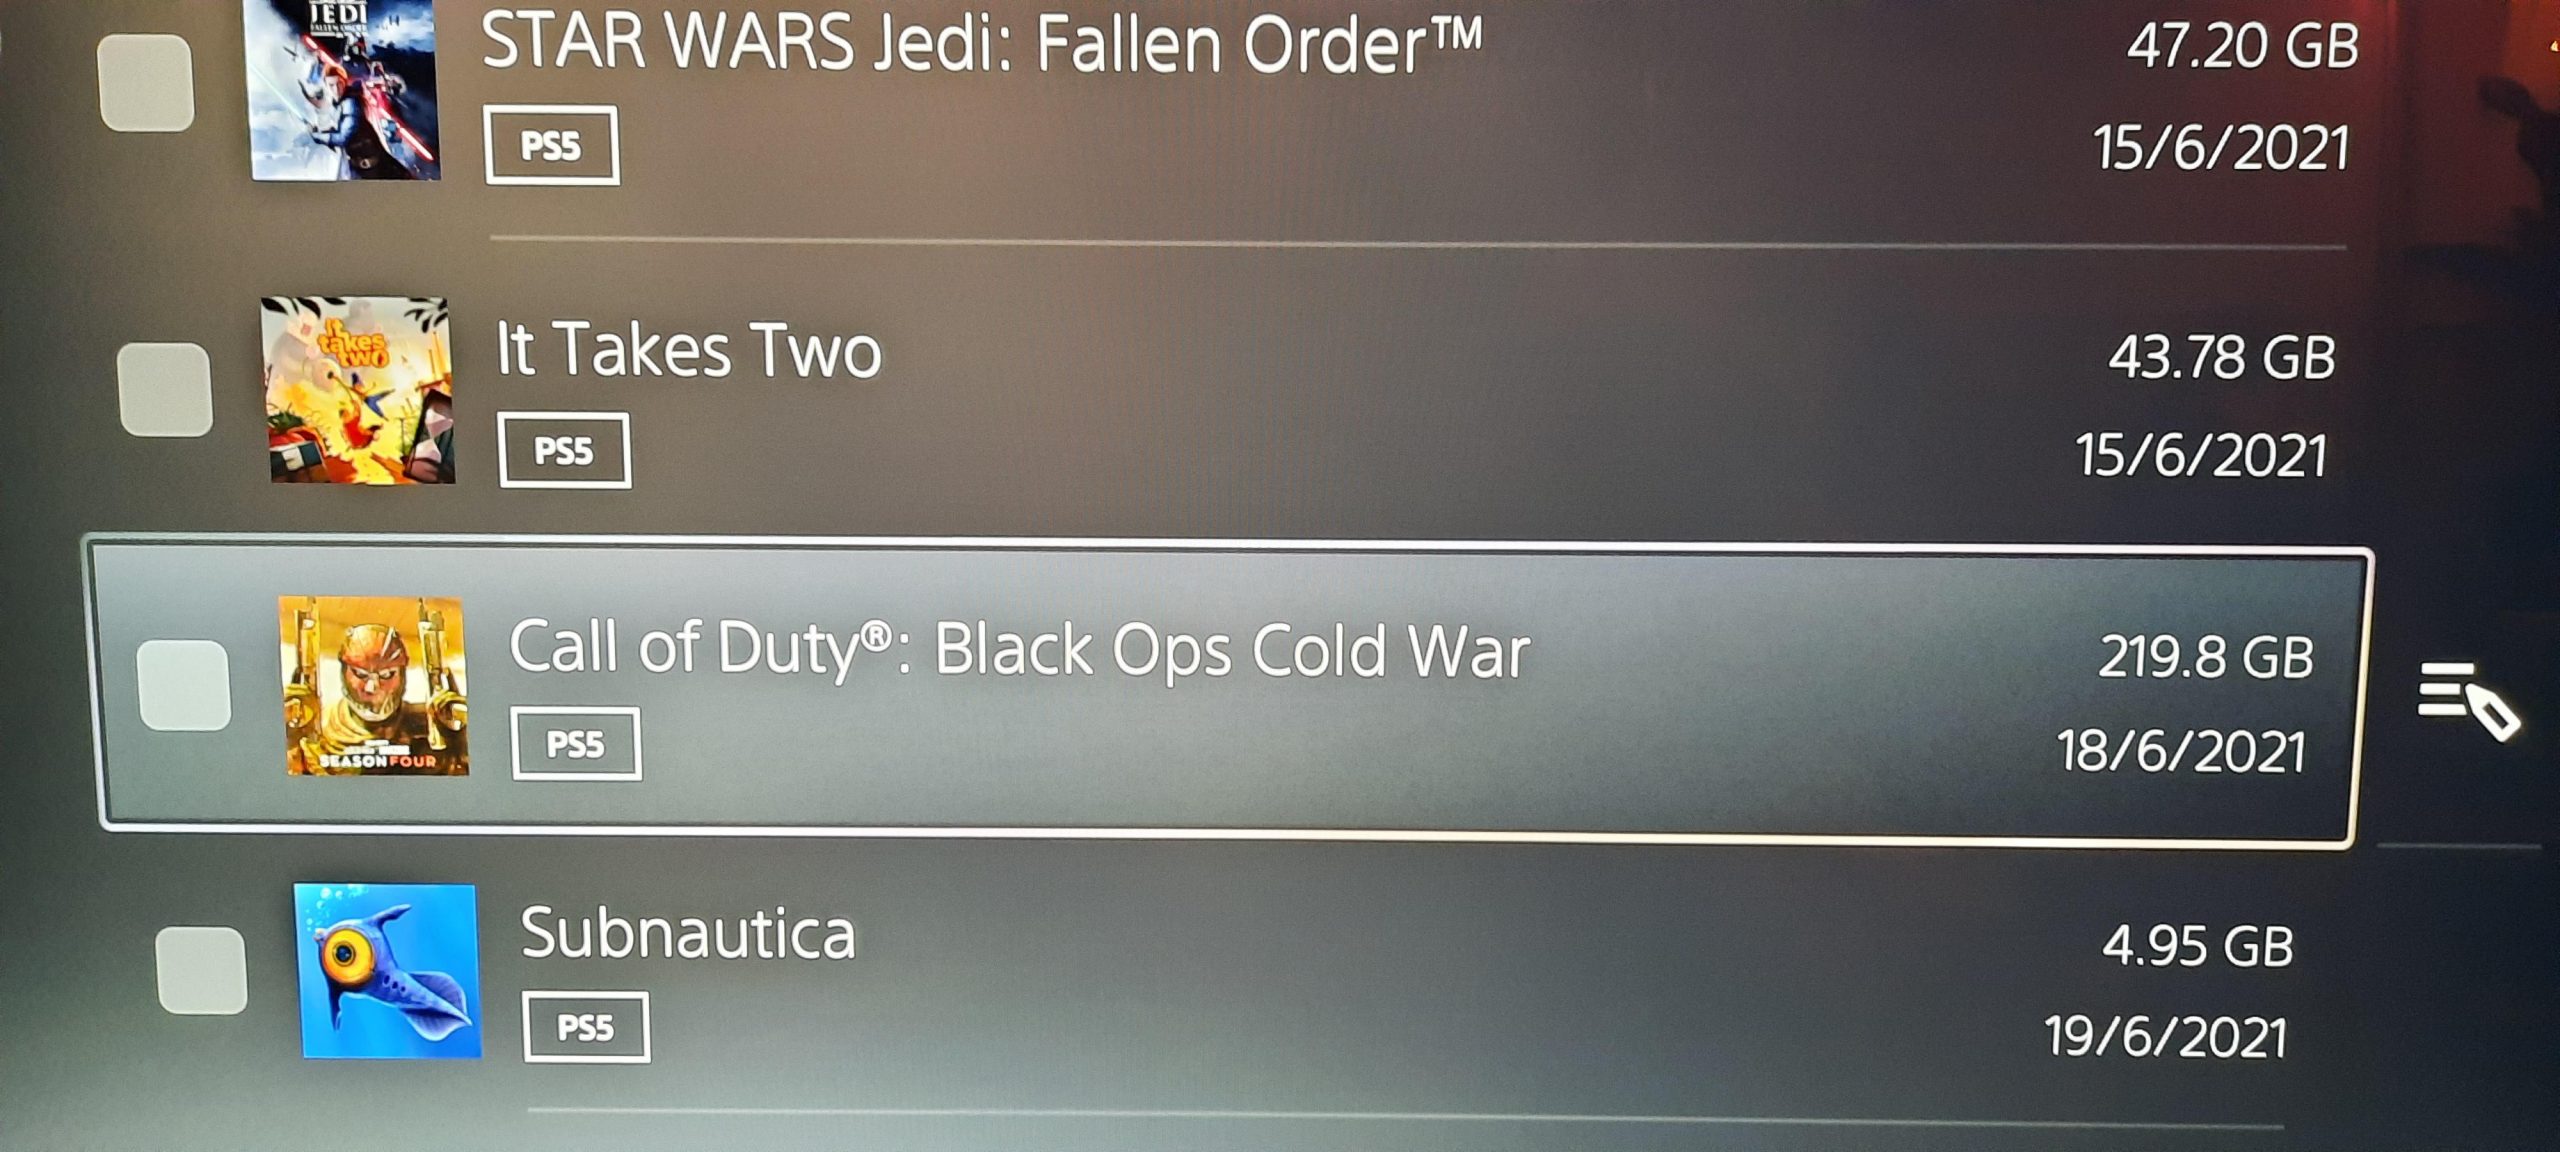 Call of Duty Black Ops Cold War ayeuna langkung ti 200 GB dina Konsol